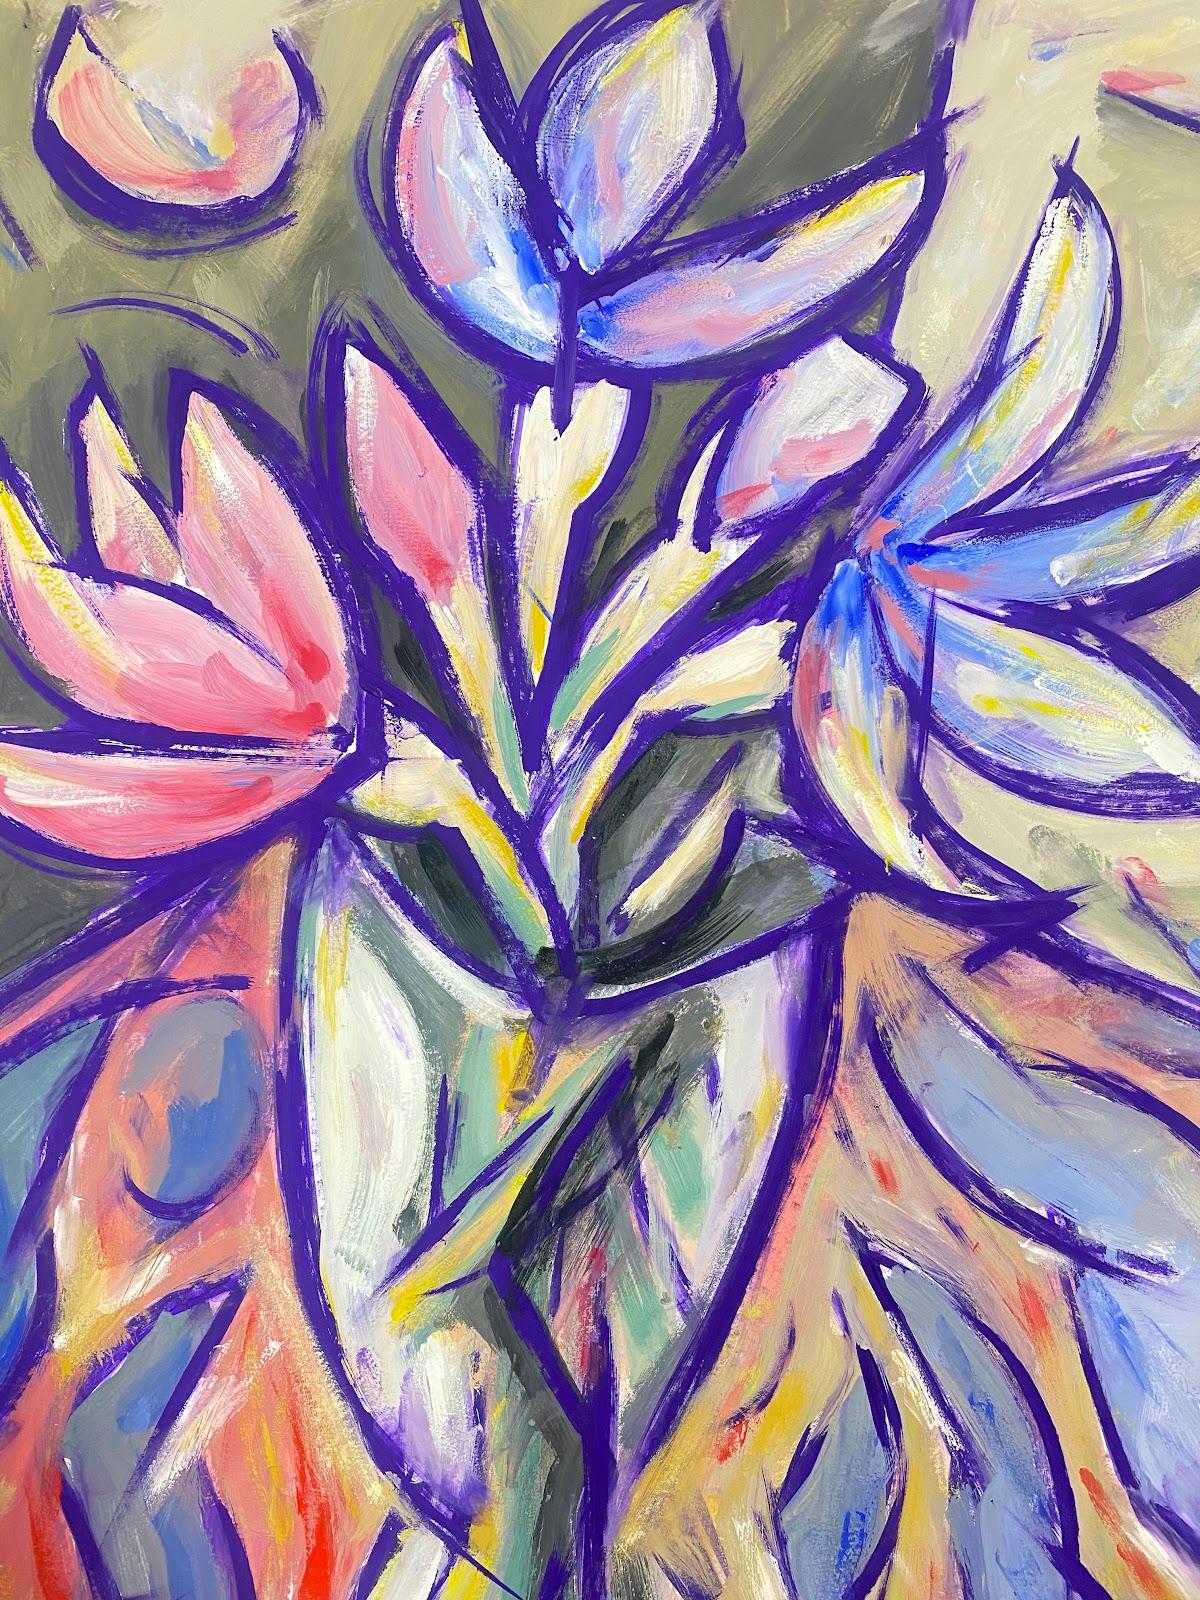 Peinture moderniste française de tulipes roses et violettes dans un vase en verre transparent - Moderne Painting par Paul-Louis Bolot (French 1918-2003)